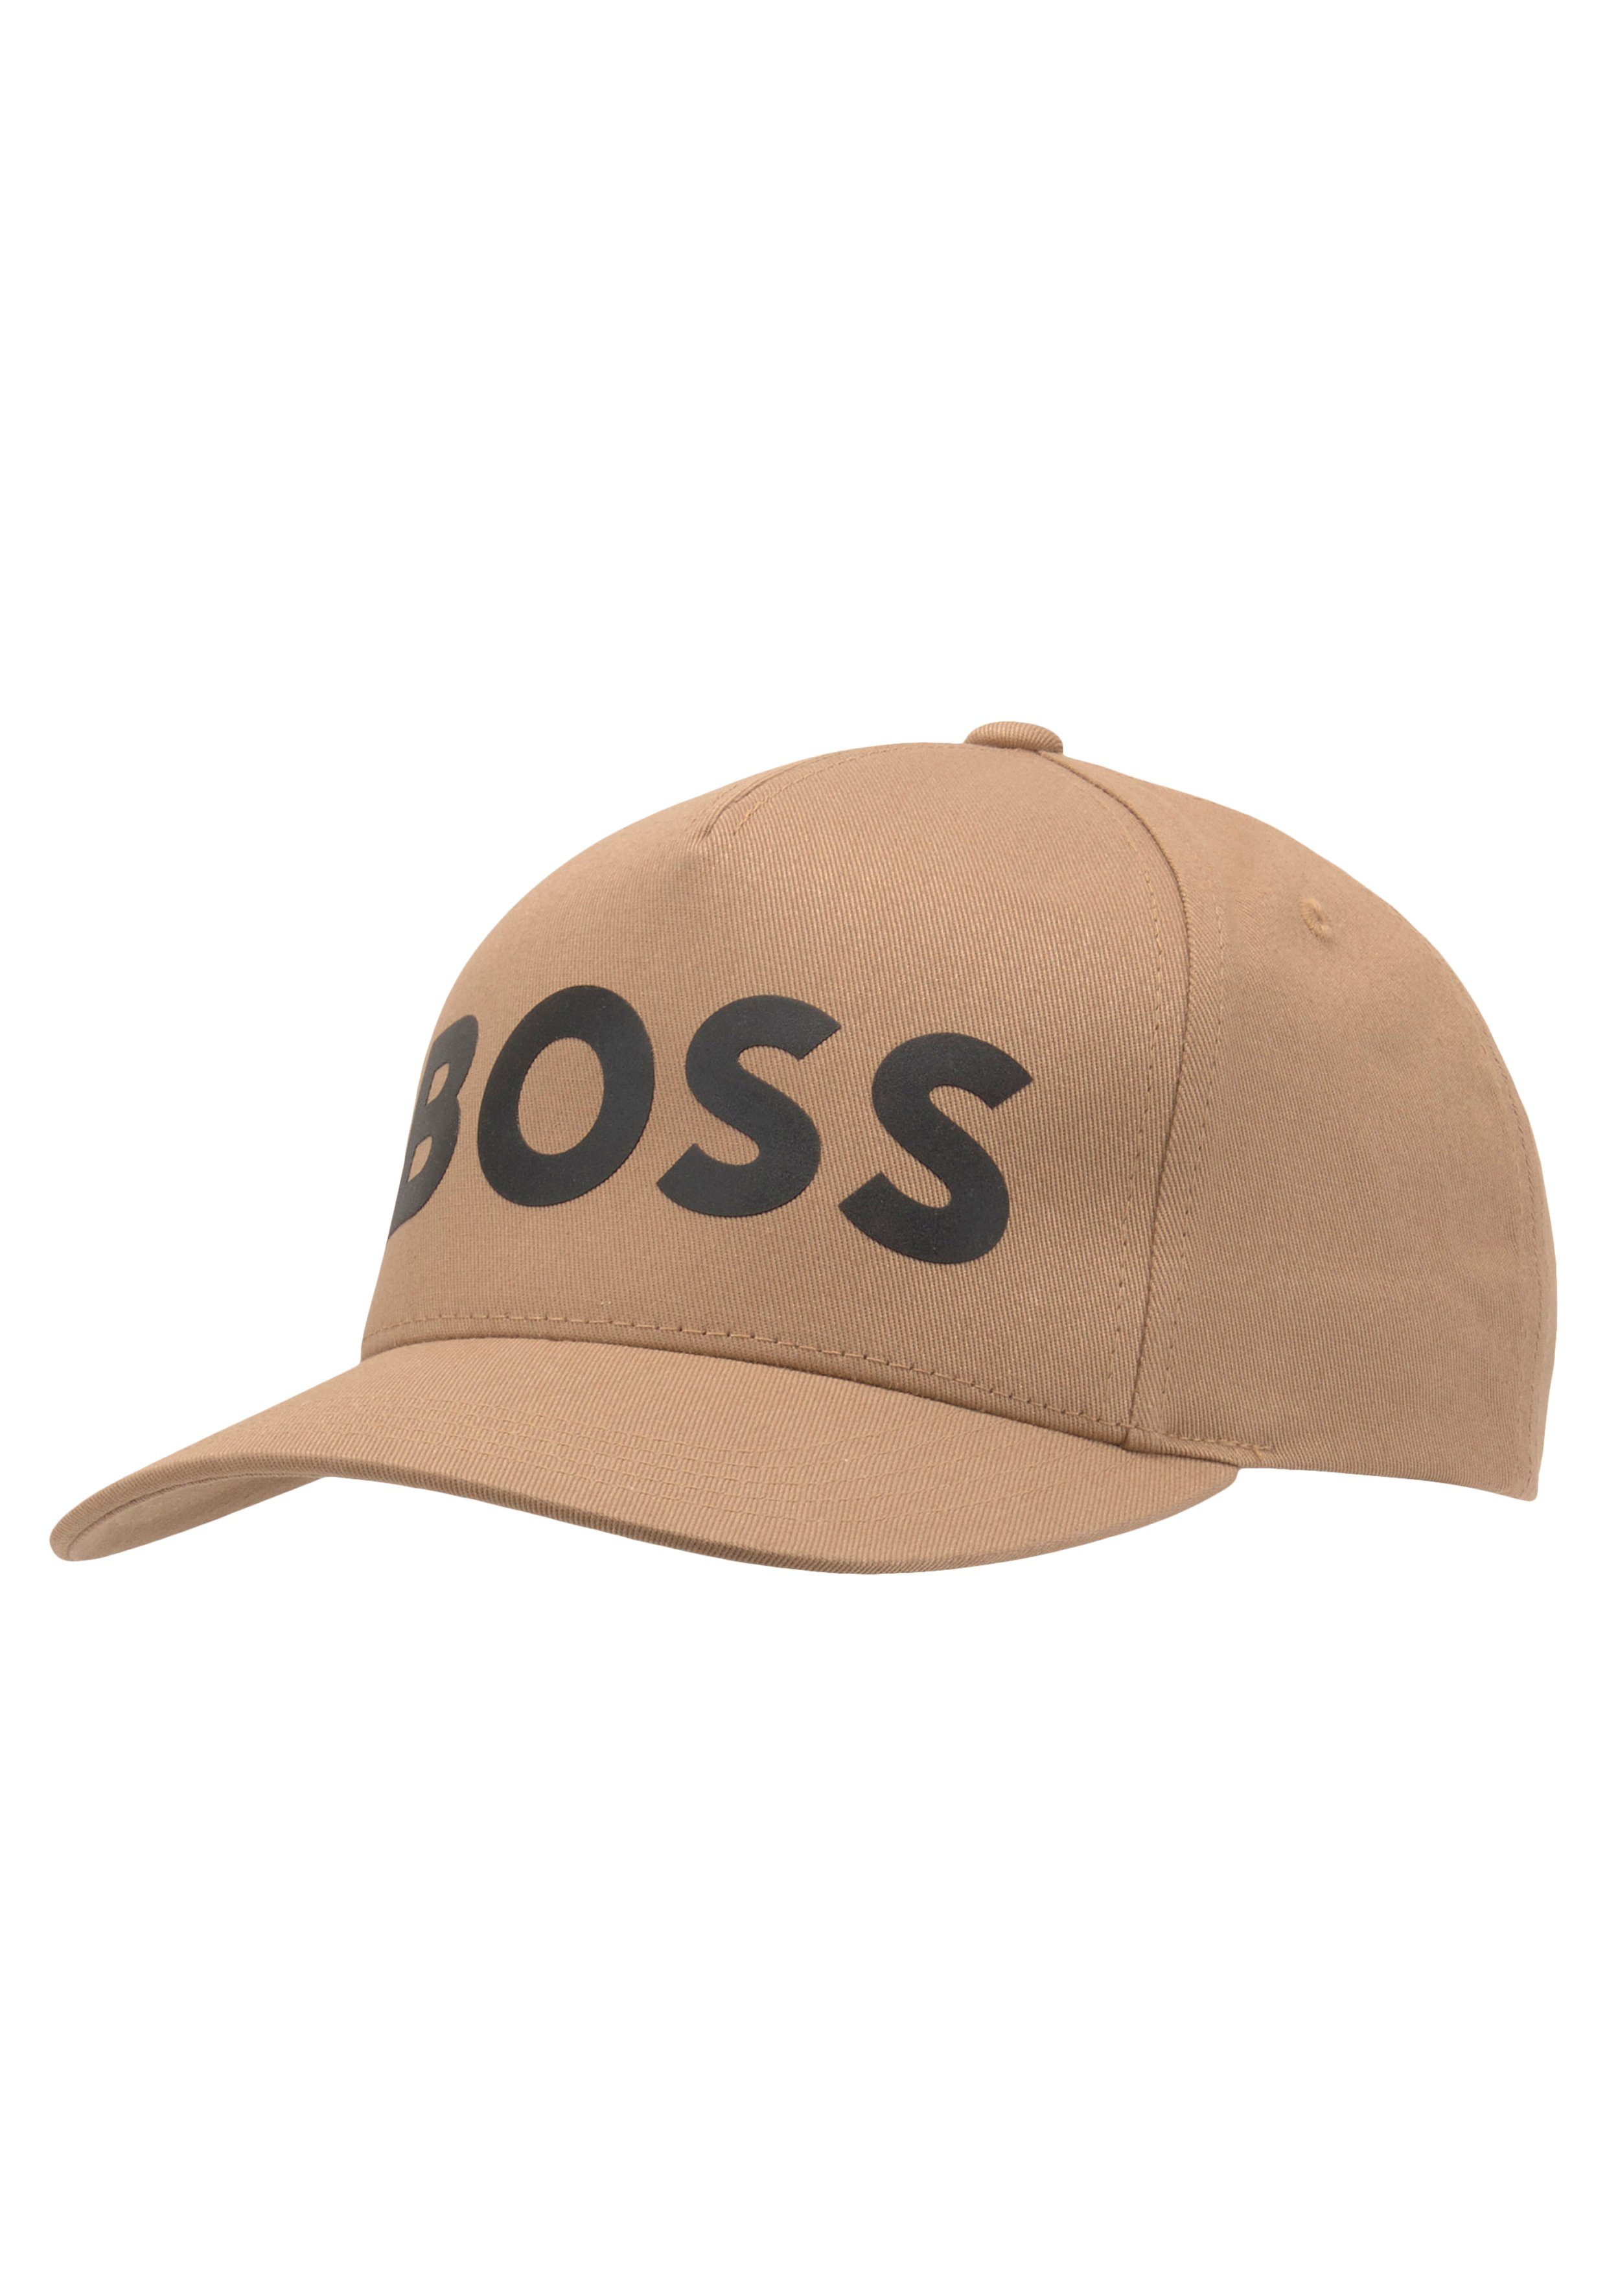 [Produkte zu supergünstigen Preisen] BOSS Baseball Cap medium_beige mit Logodruck Sevile-BOSS-5